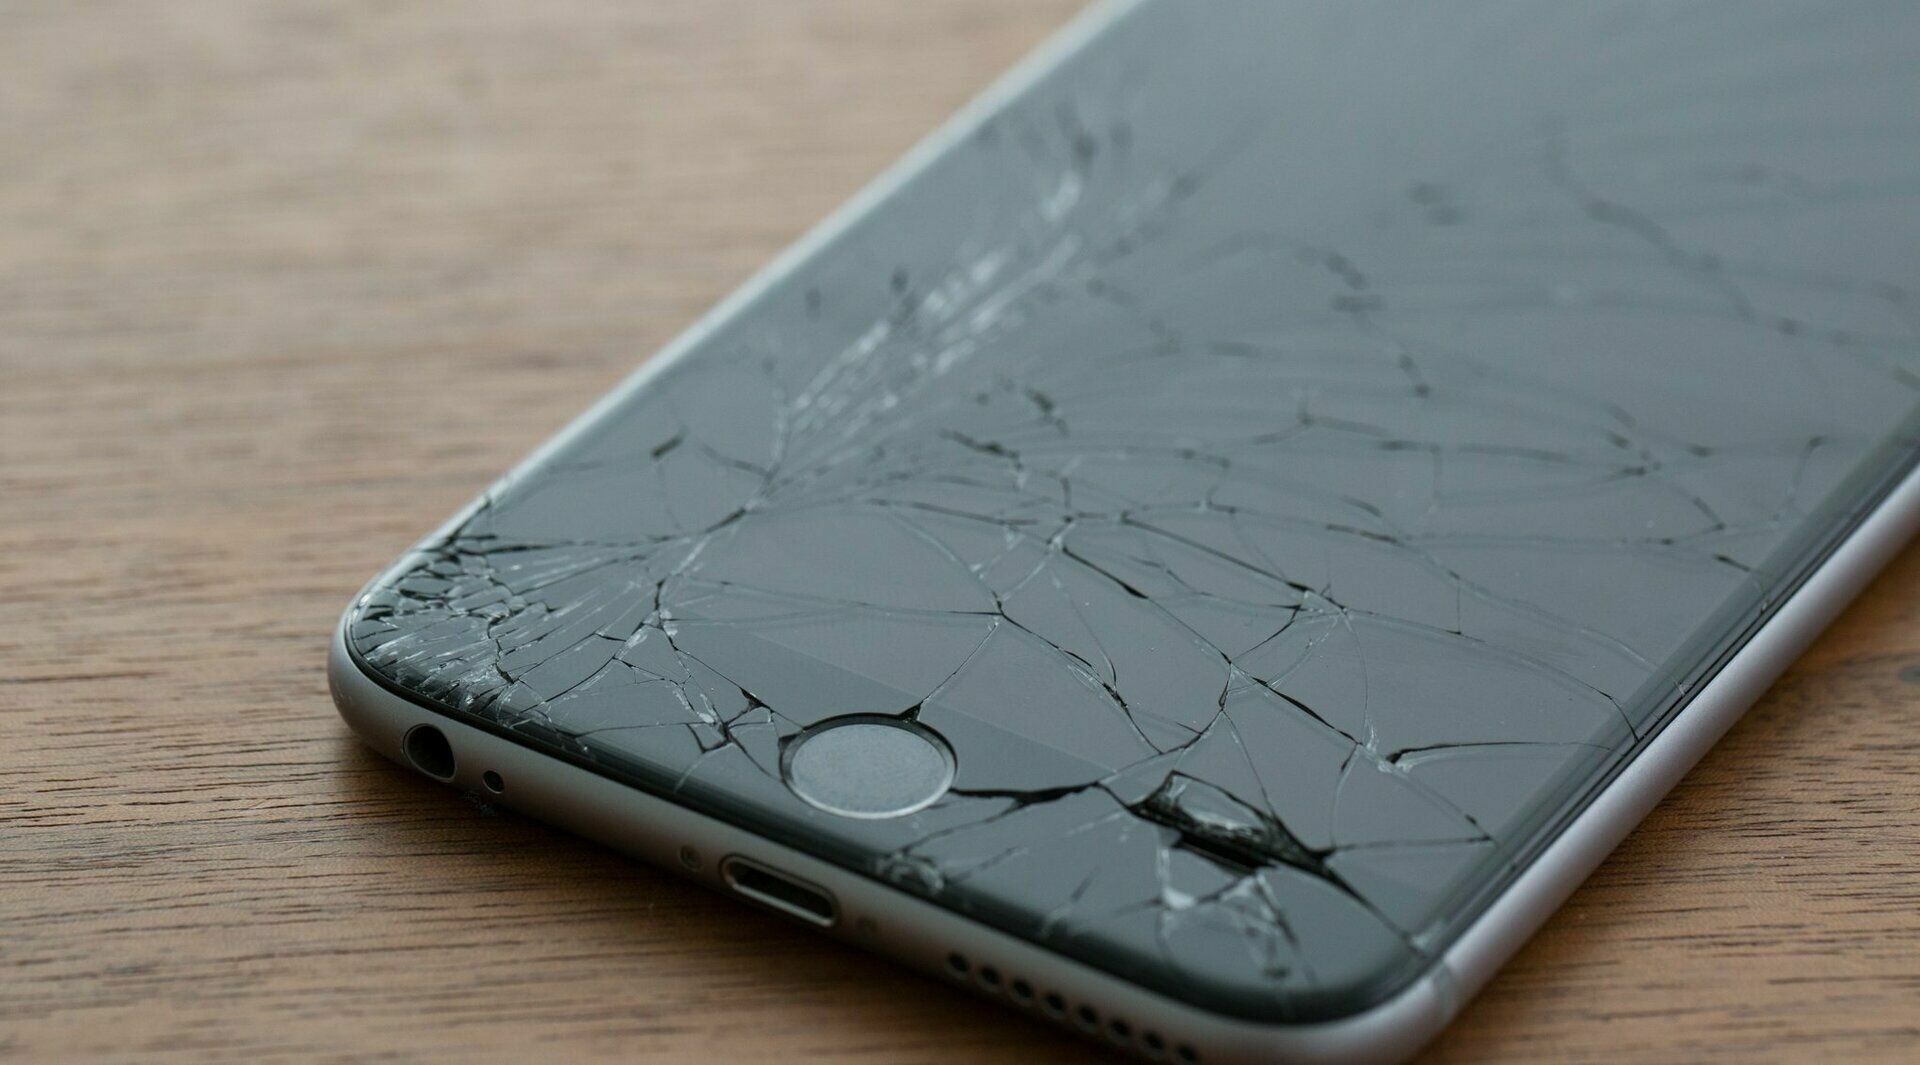 Купить разбитый телефон. Разбитый айфон. Сломанный айфон. Разбитые айфоны. Разбитый дисплей iphone.